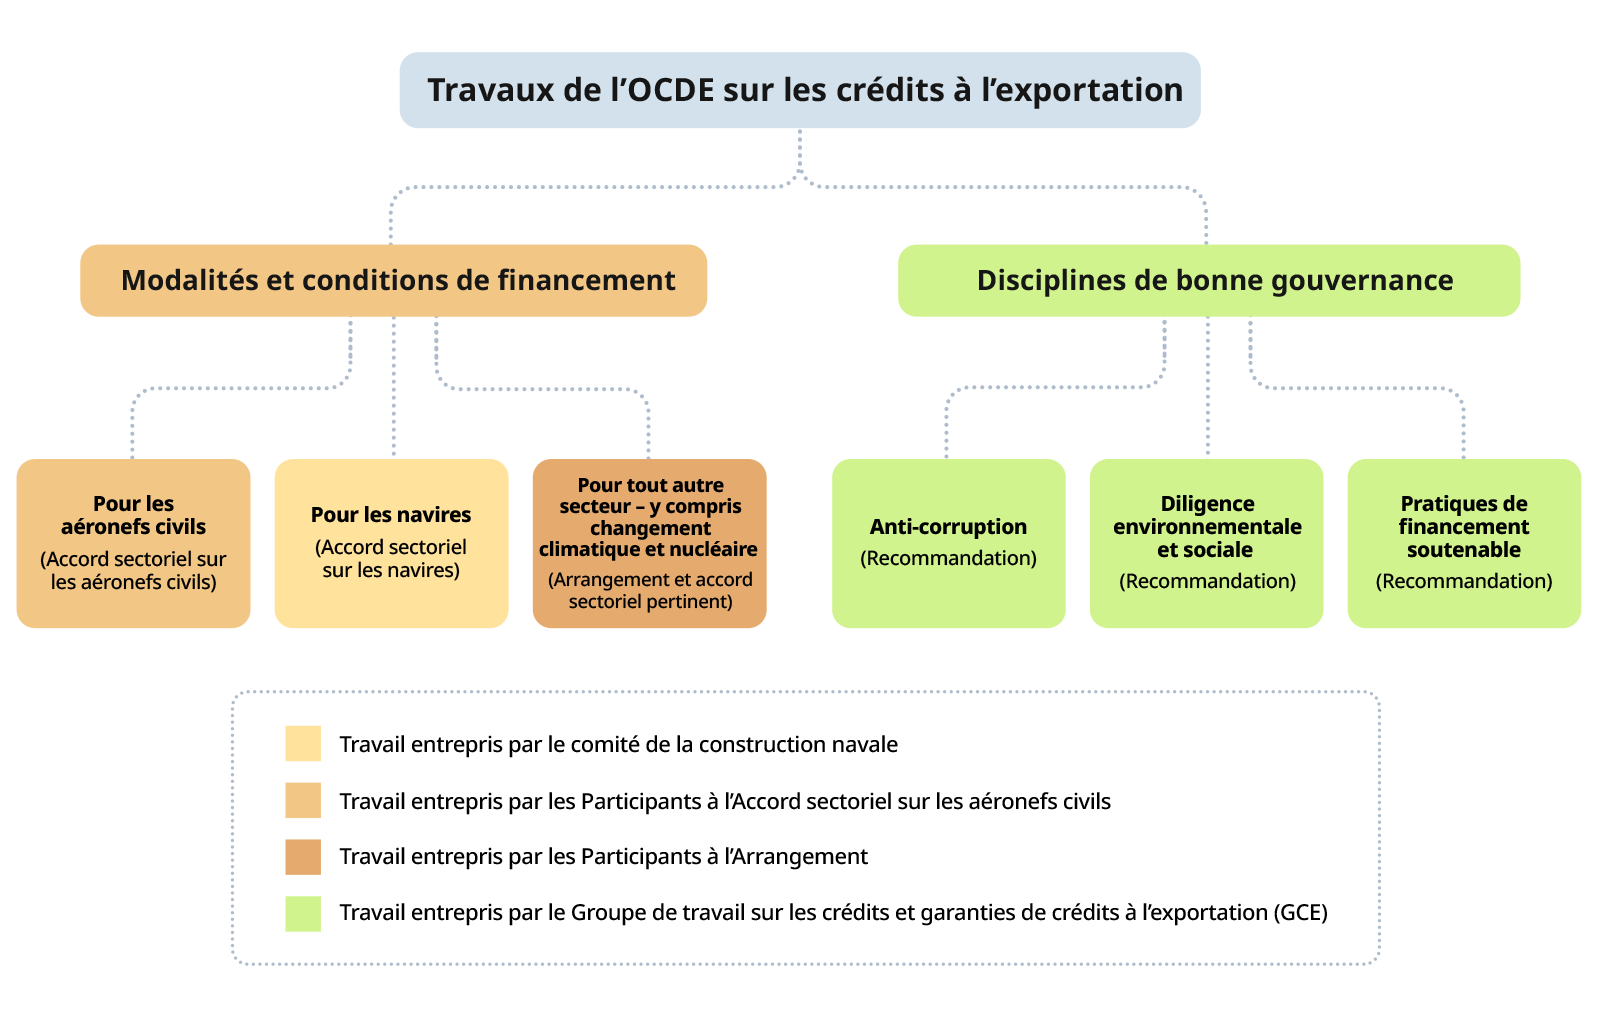 Les travaux de l'OCDE sur les crédits à l'exportation